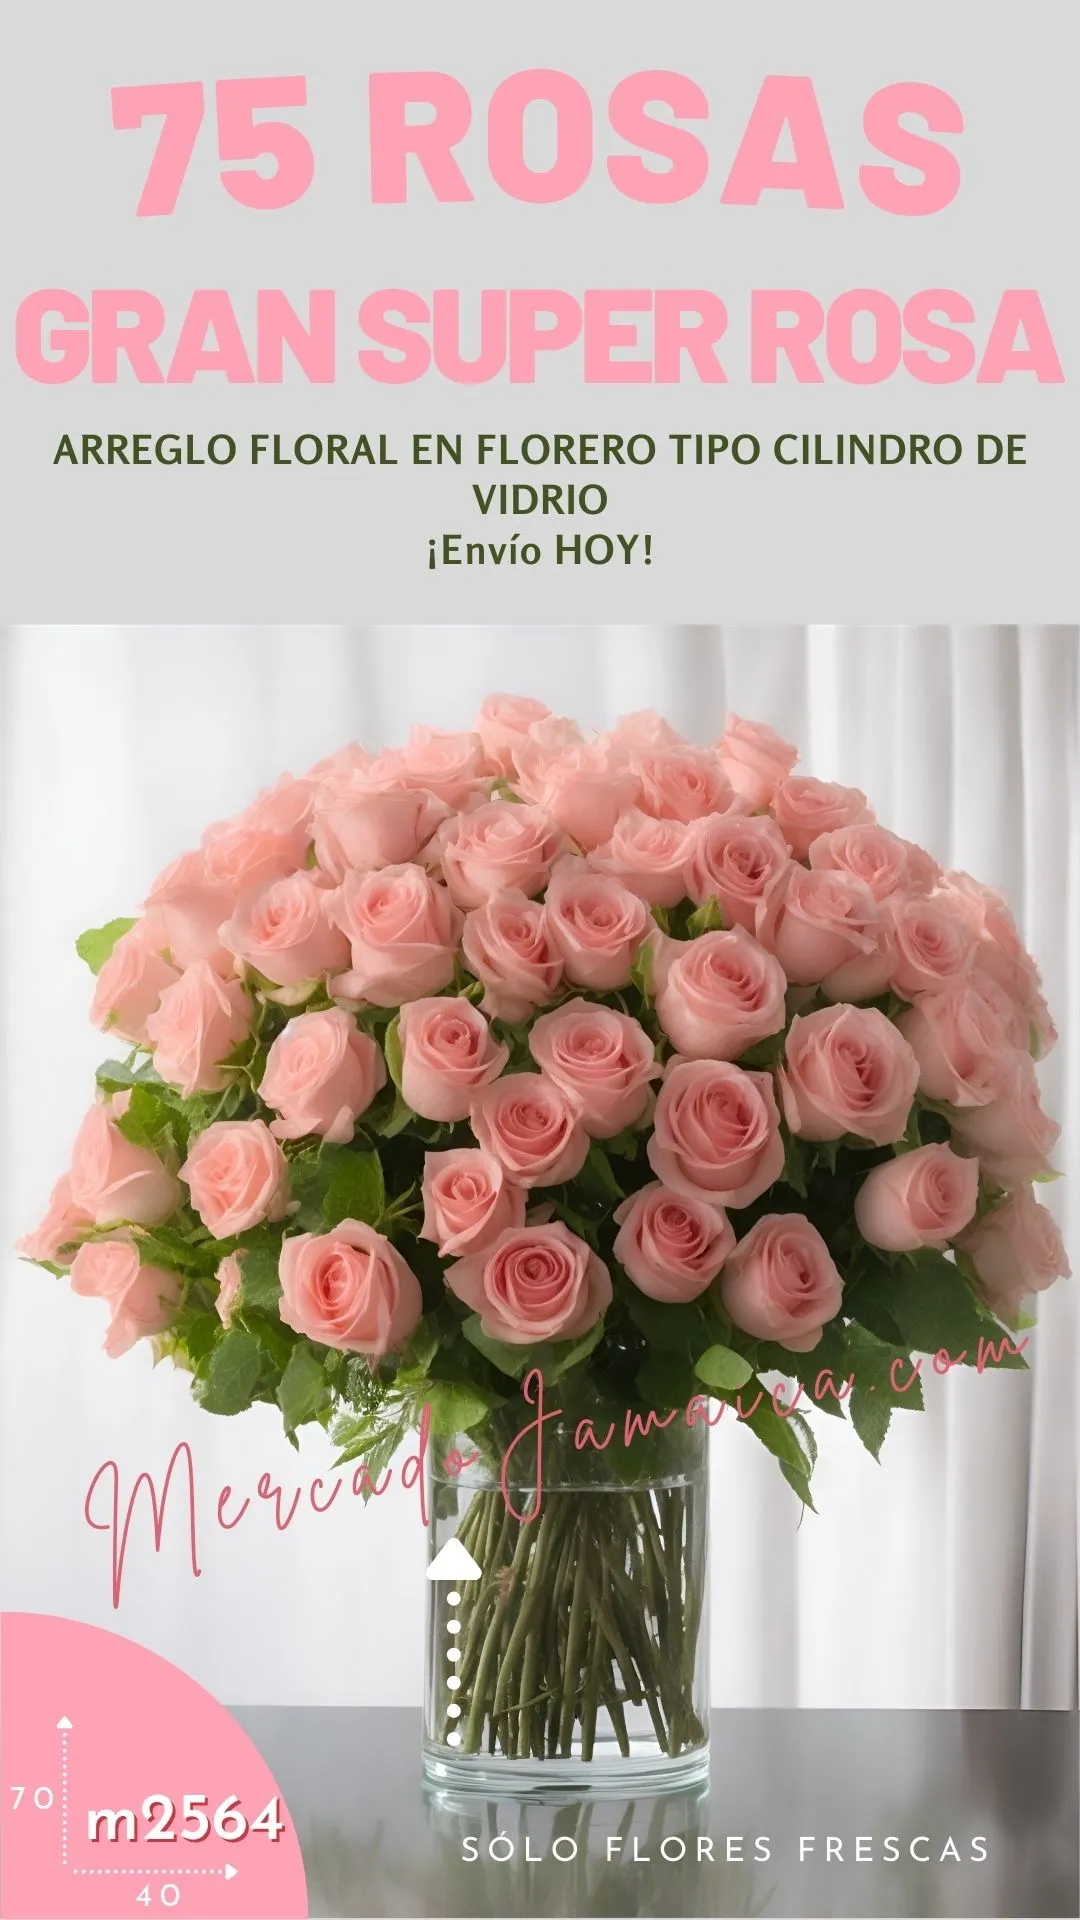 Bellos detalles, arreglo floral para sorprender con alegría 75 Rosas color Rosa